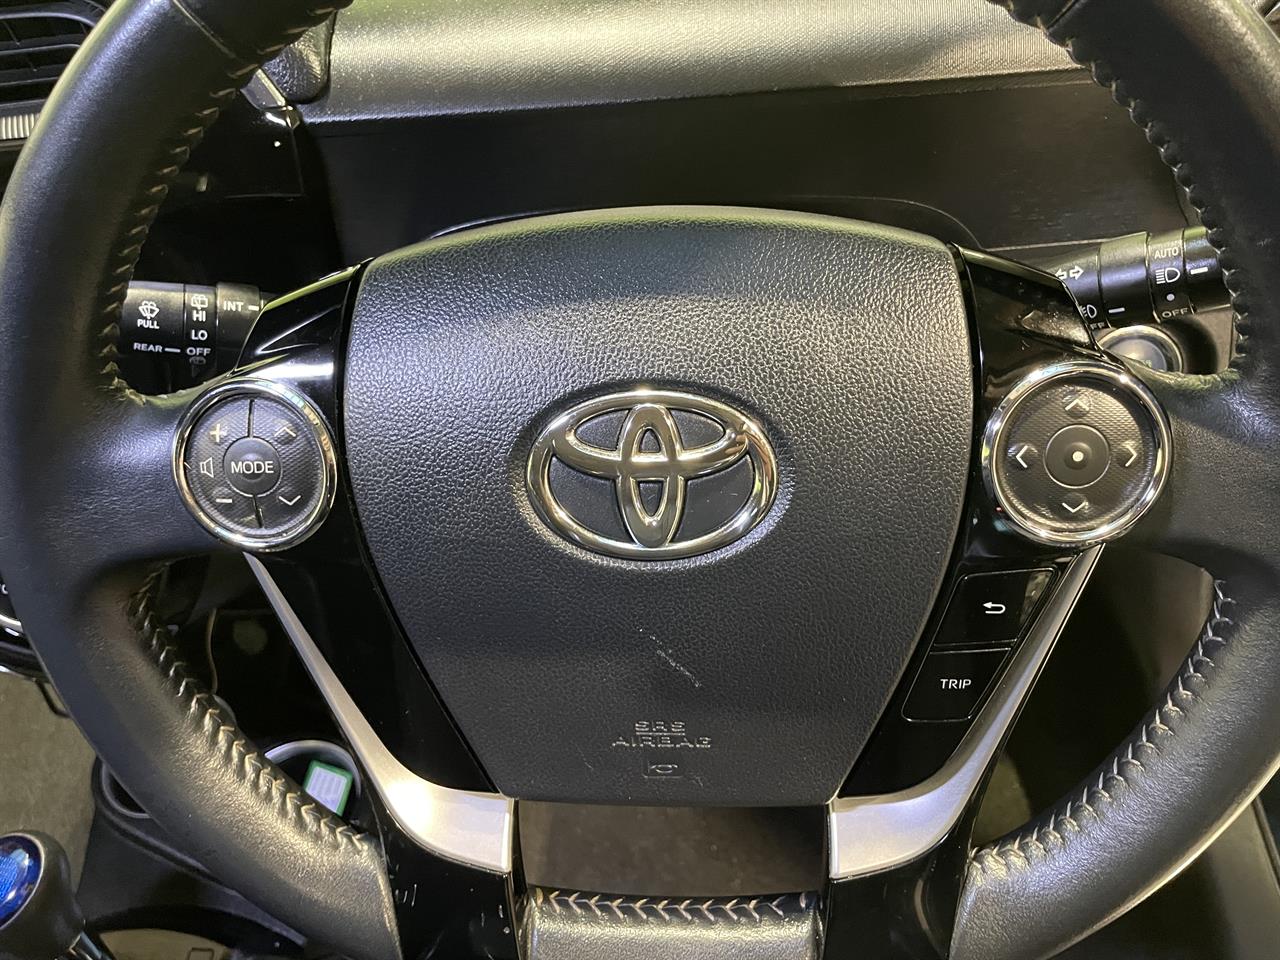 2018 Toyota AQUA